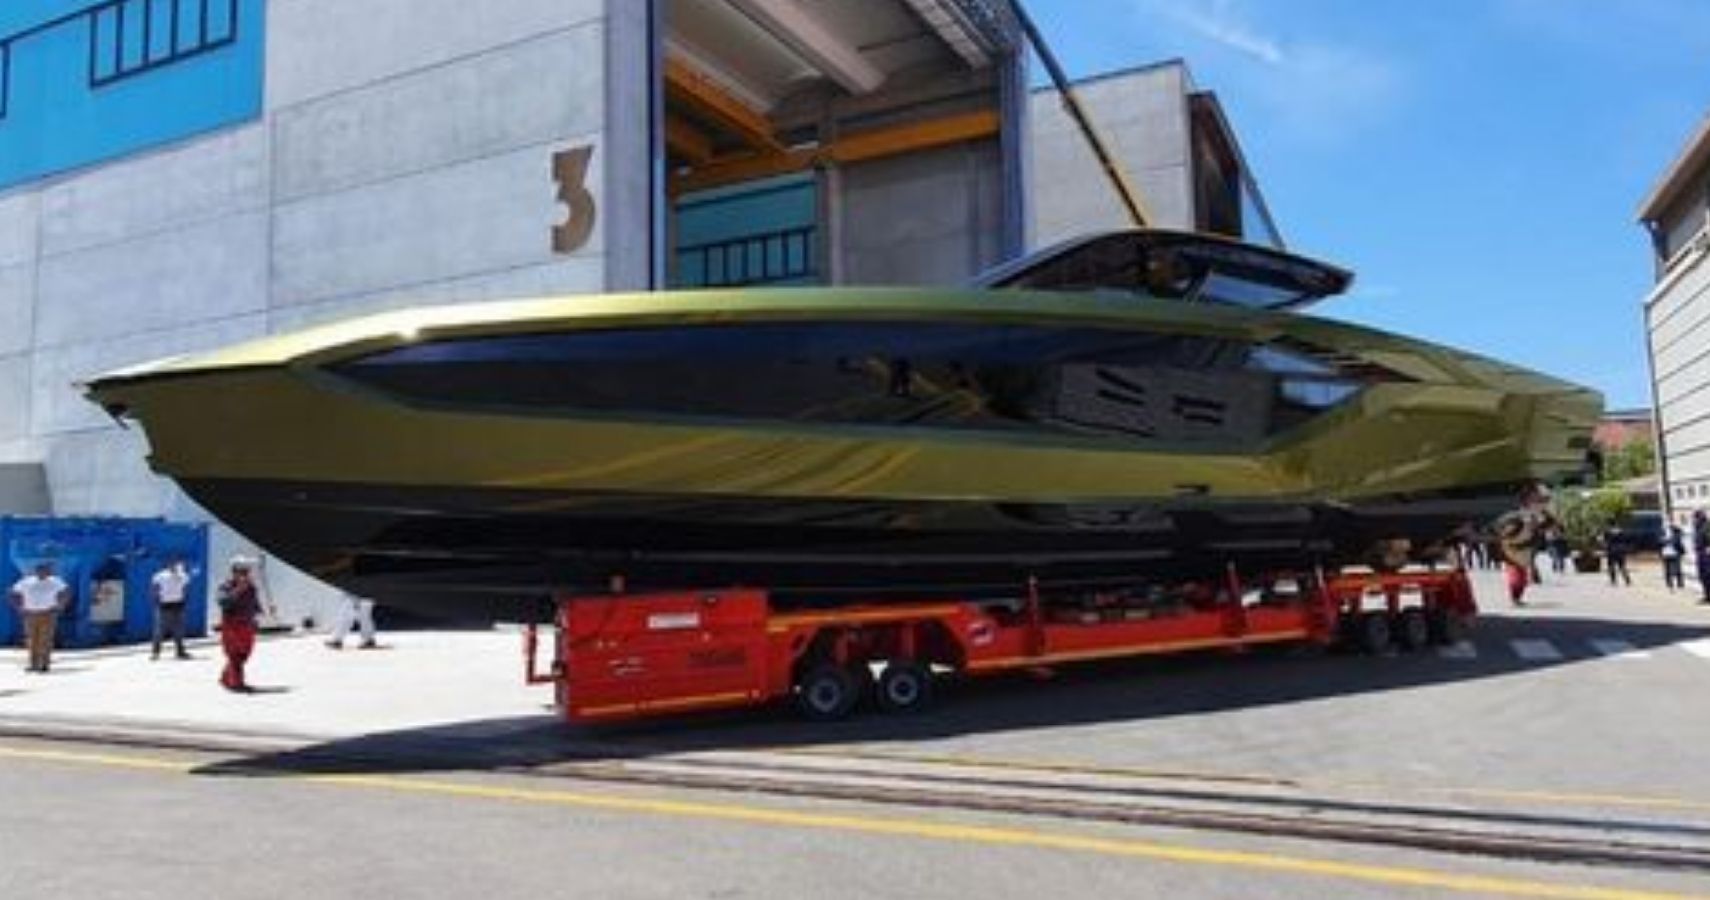 How Conor McGregor Made His $4 Million Lamborghini Yacht Even More